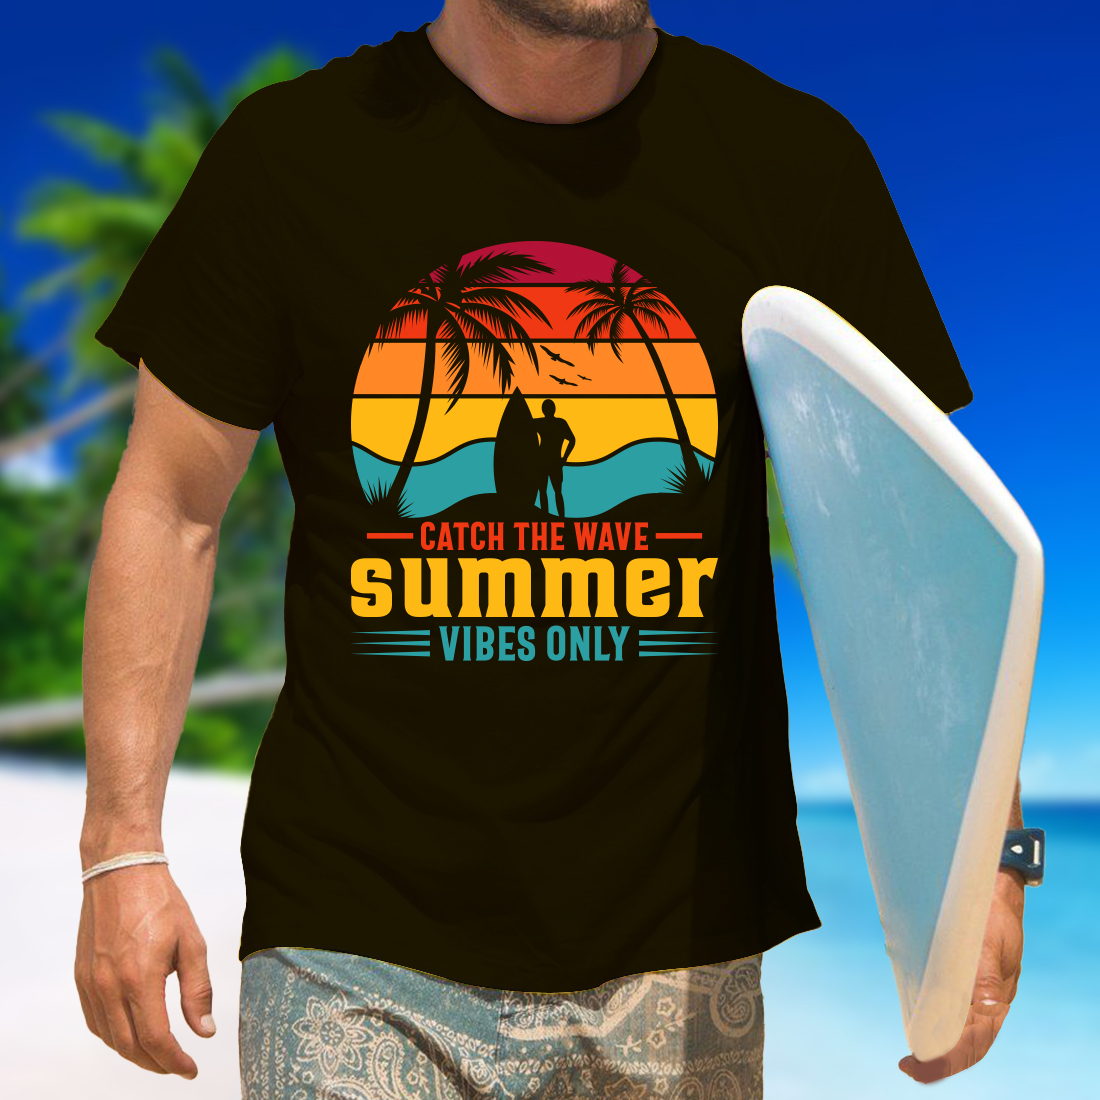 sunset t shirt design 1 415